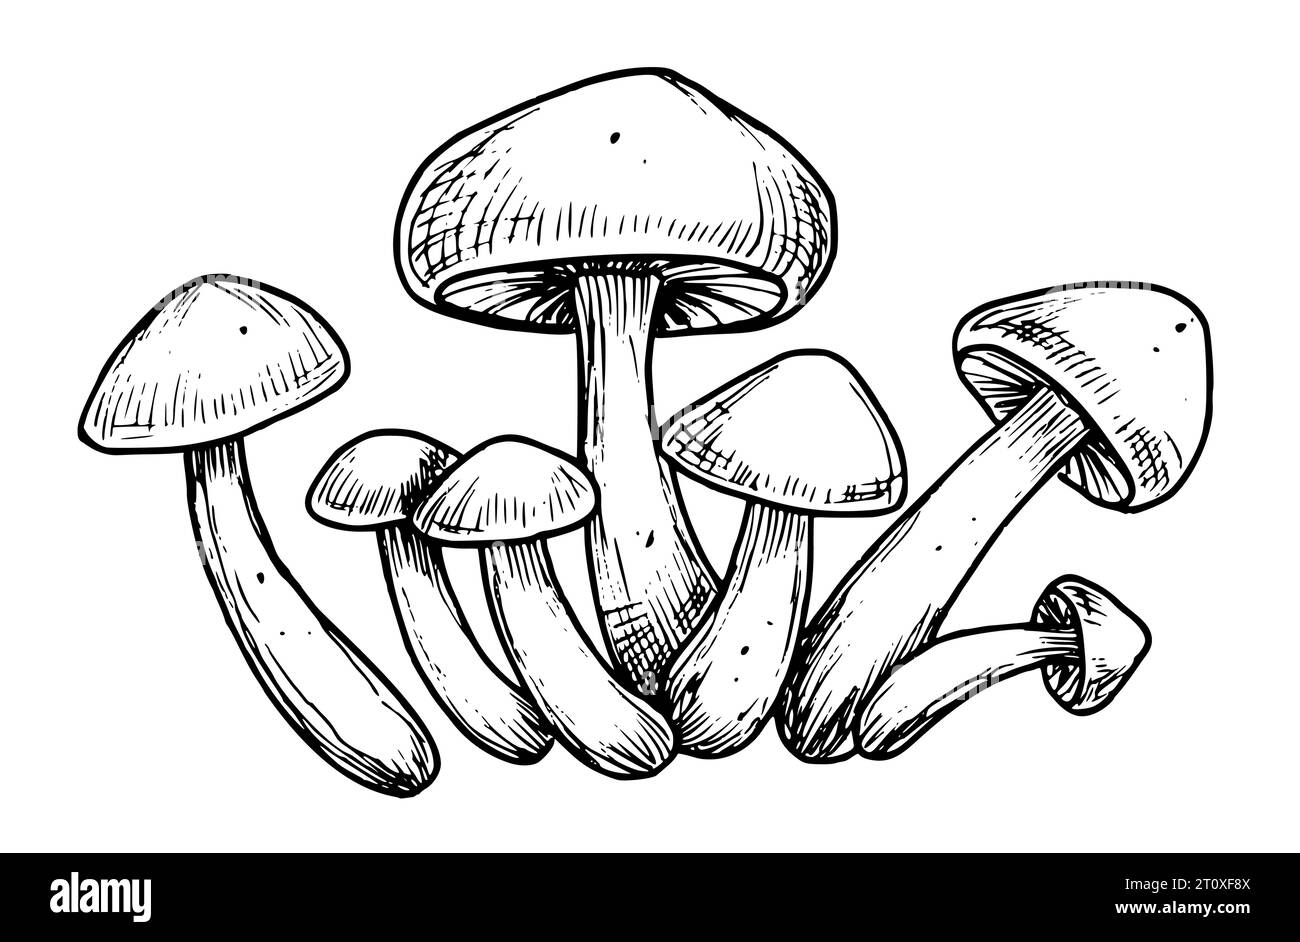 Champignons forestiers. Illustration vectorielle dessinée à la main avec des champignons peints dans le style d'art au trait. Gravure du groupe de champignons en couleurs noir et blanc. Croquis gravé d'agaricus pour l'étiquette du produit. Illustration de Vecteur